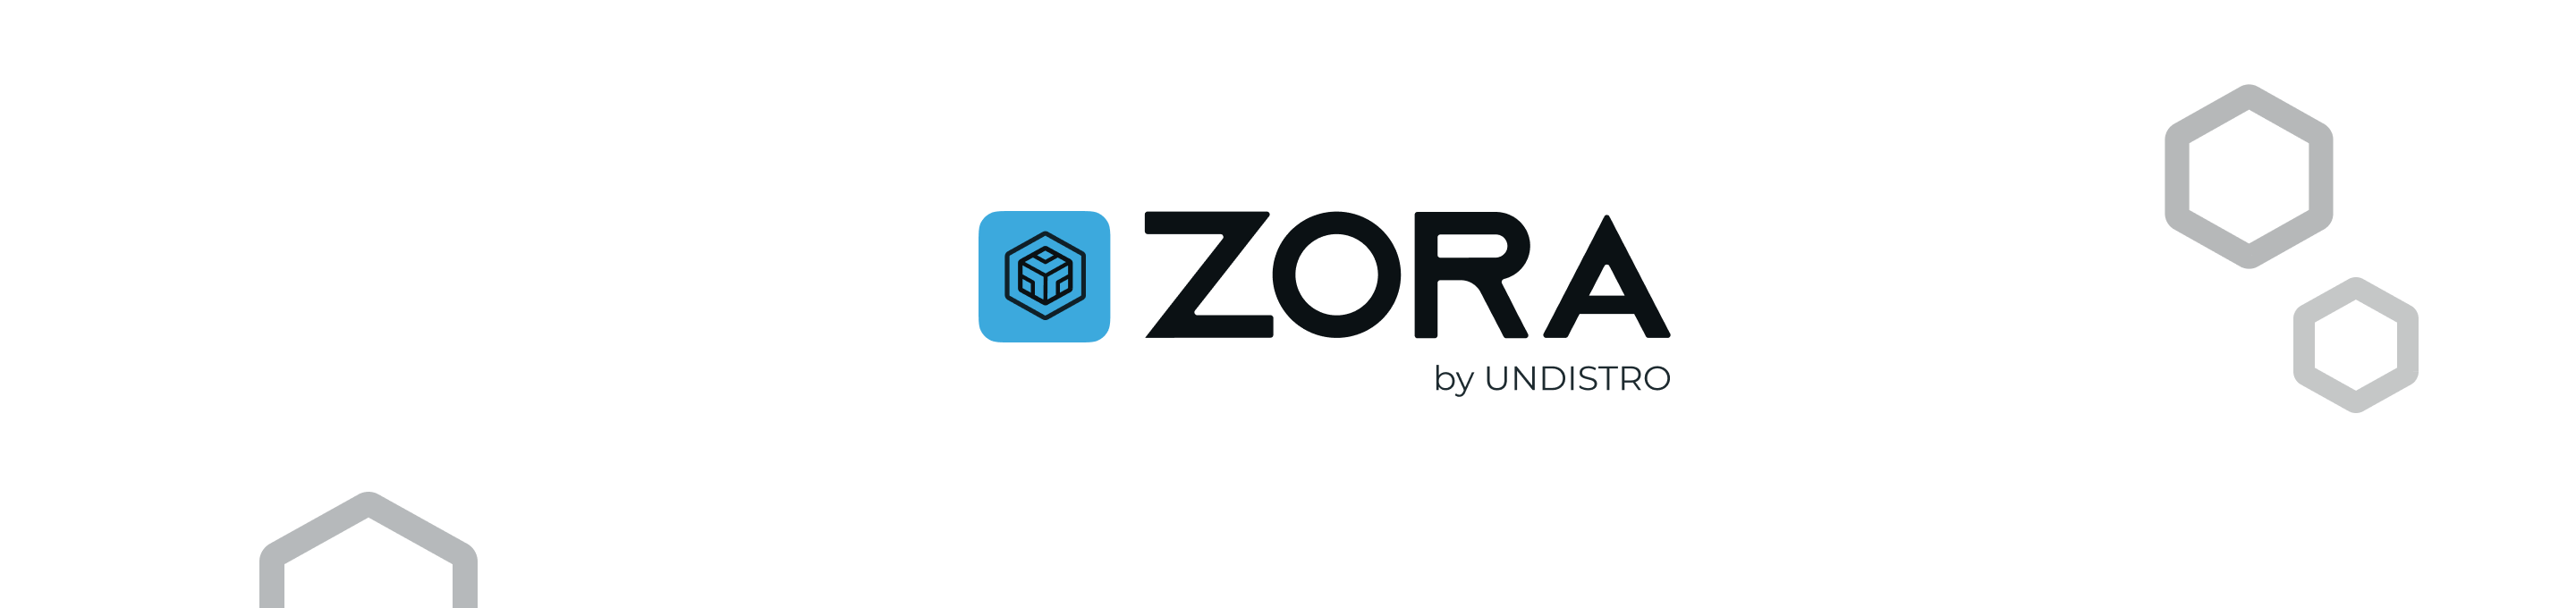 Zora logo